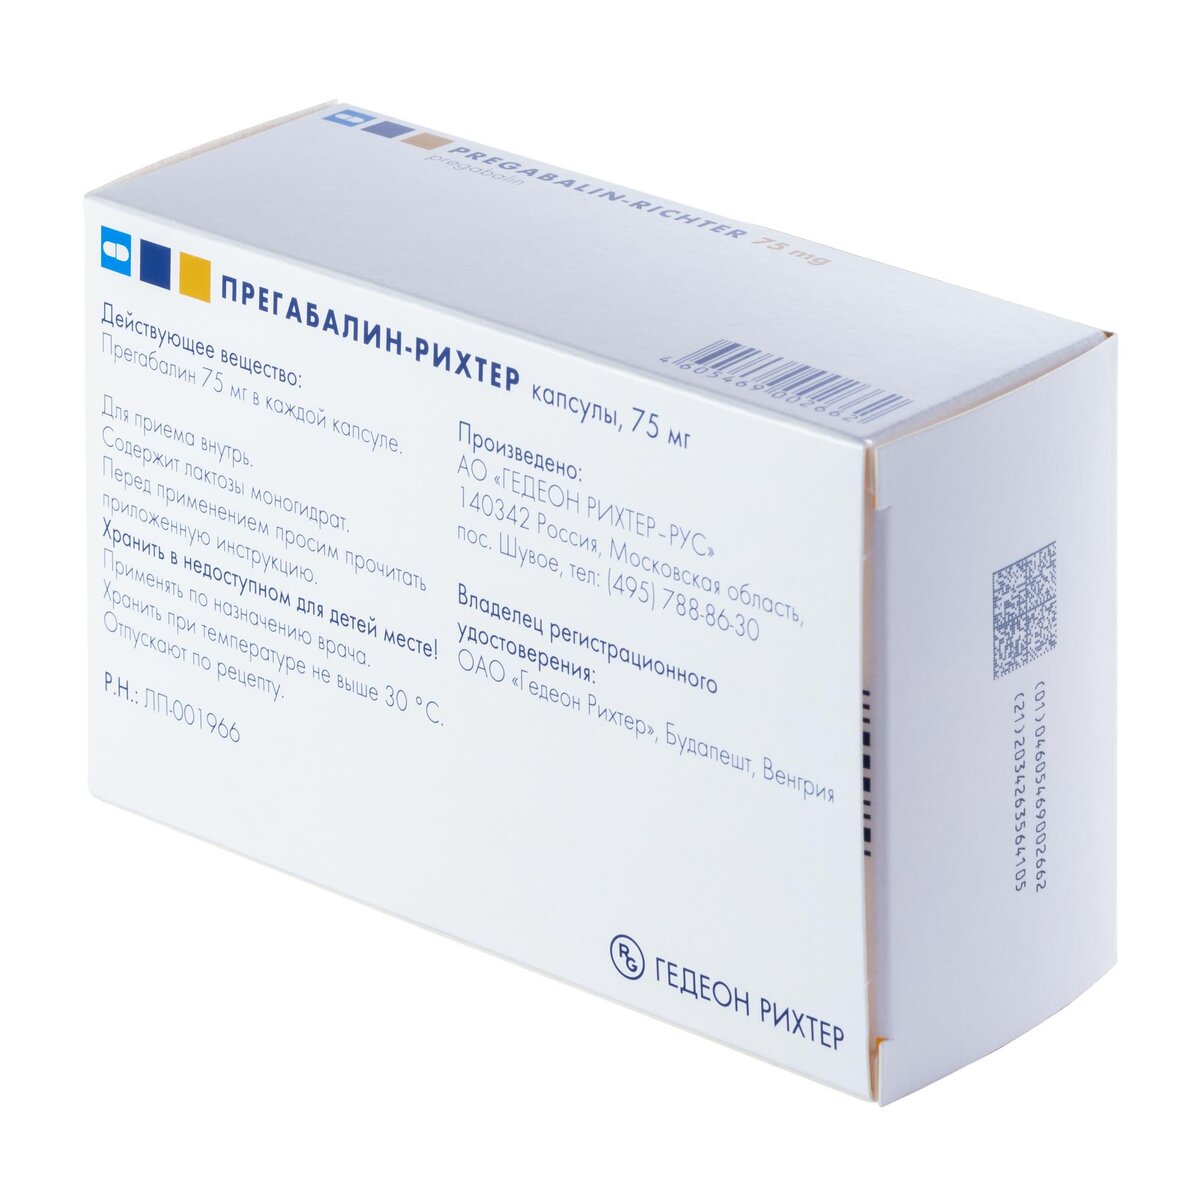 Прегабалин-Рихтер капсулы 75 мг 56 шт.